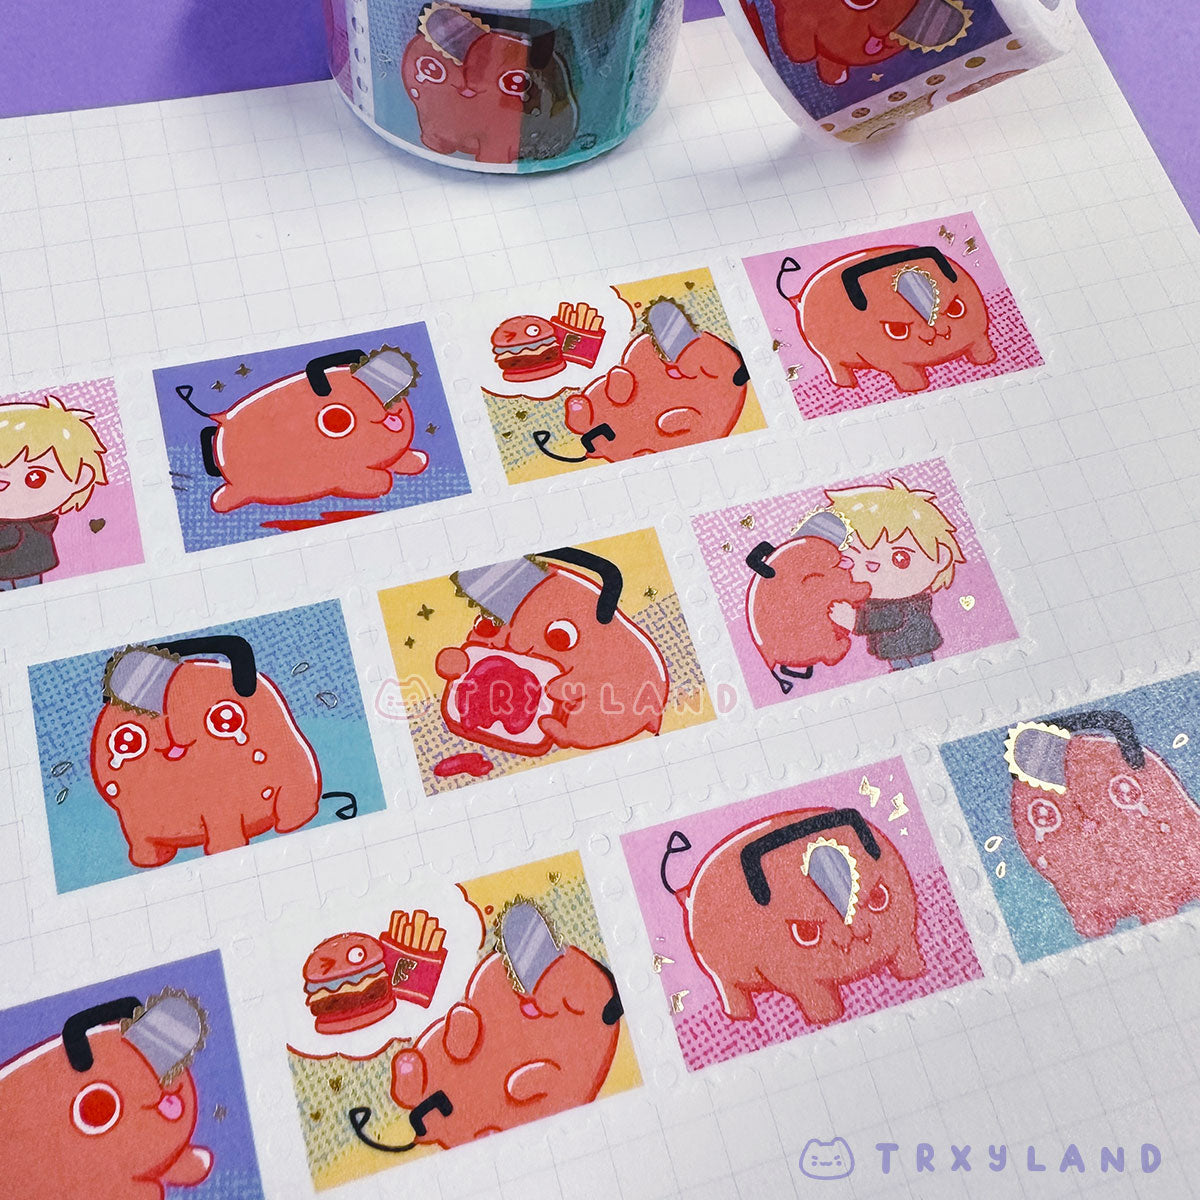 Pochita's Dream Foil Stamp Washi Tape